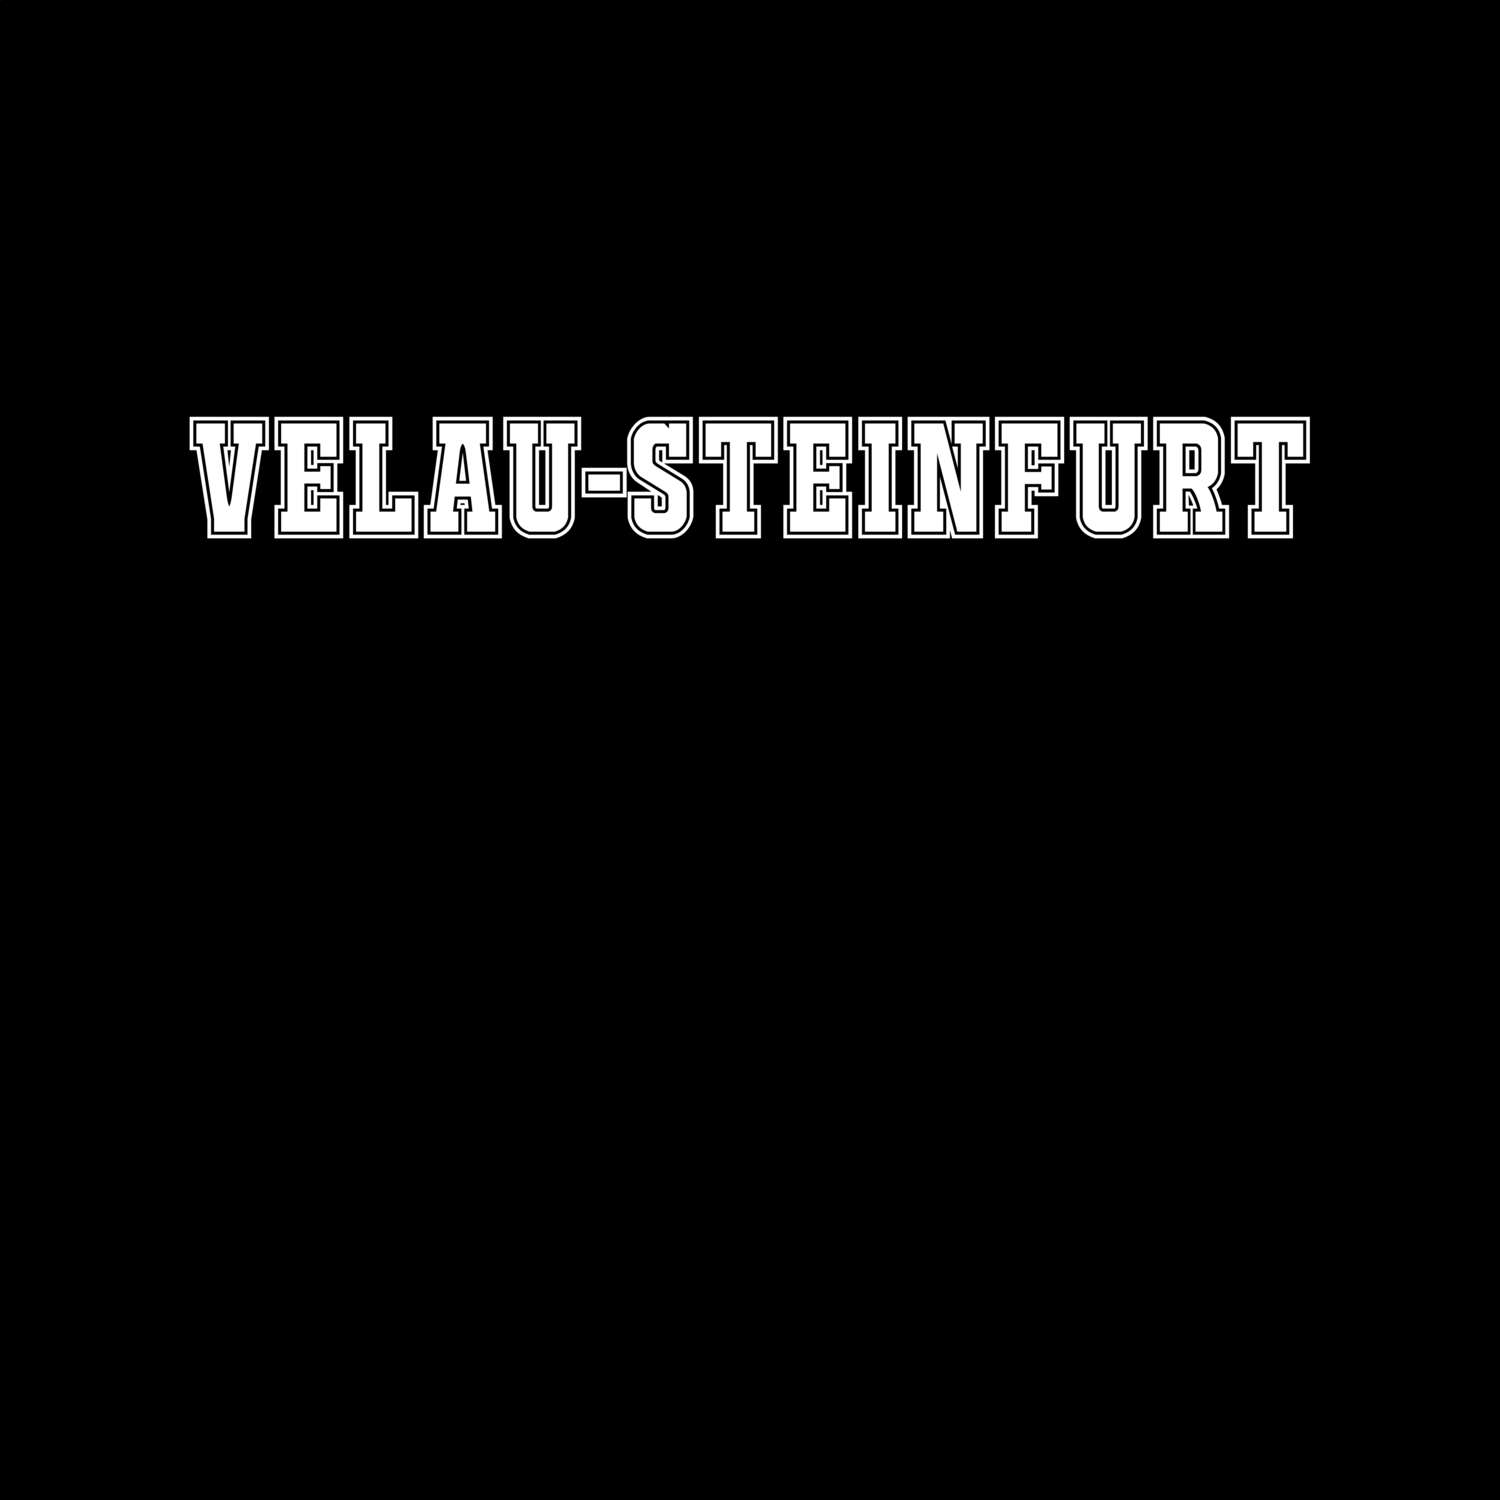 Velau-Steinfurt T-Shirt »Classic«